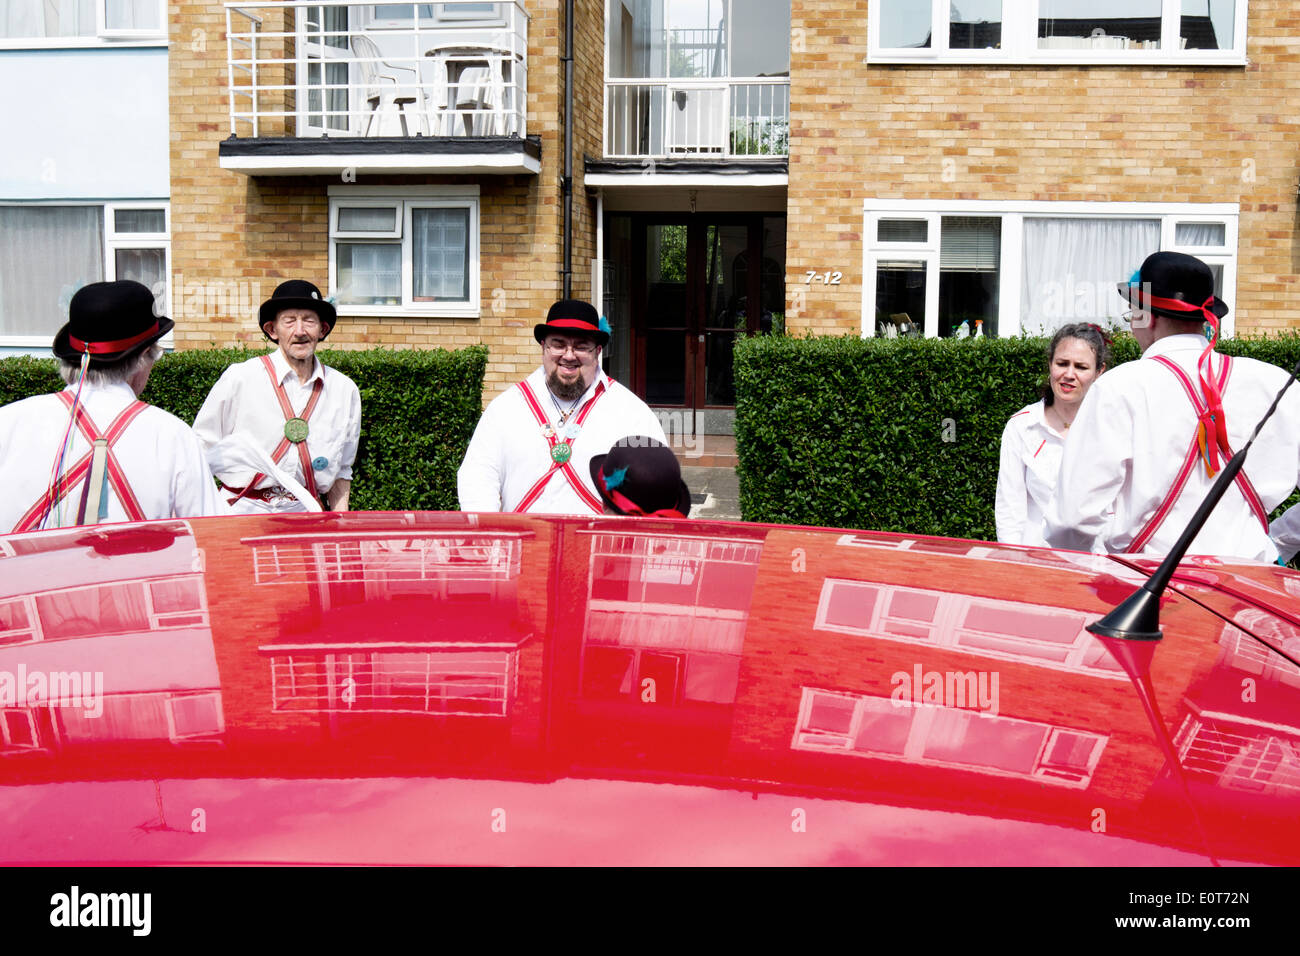 Morris Dancers vu de dessus le toit d'une voiture rouge, dans lequel les réflexions d'un bloc d'appartements est réfléchie. Banque D'Images